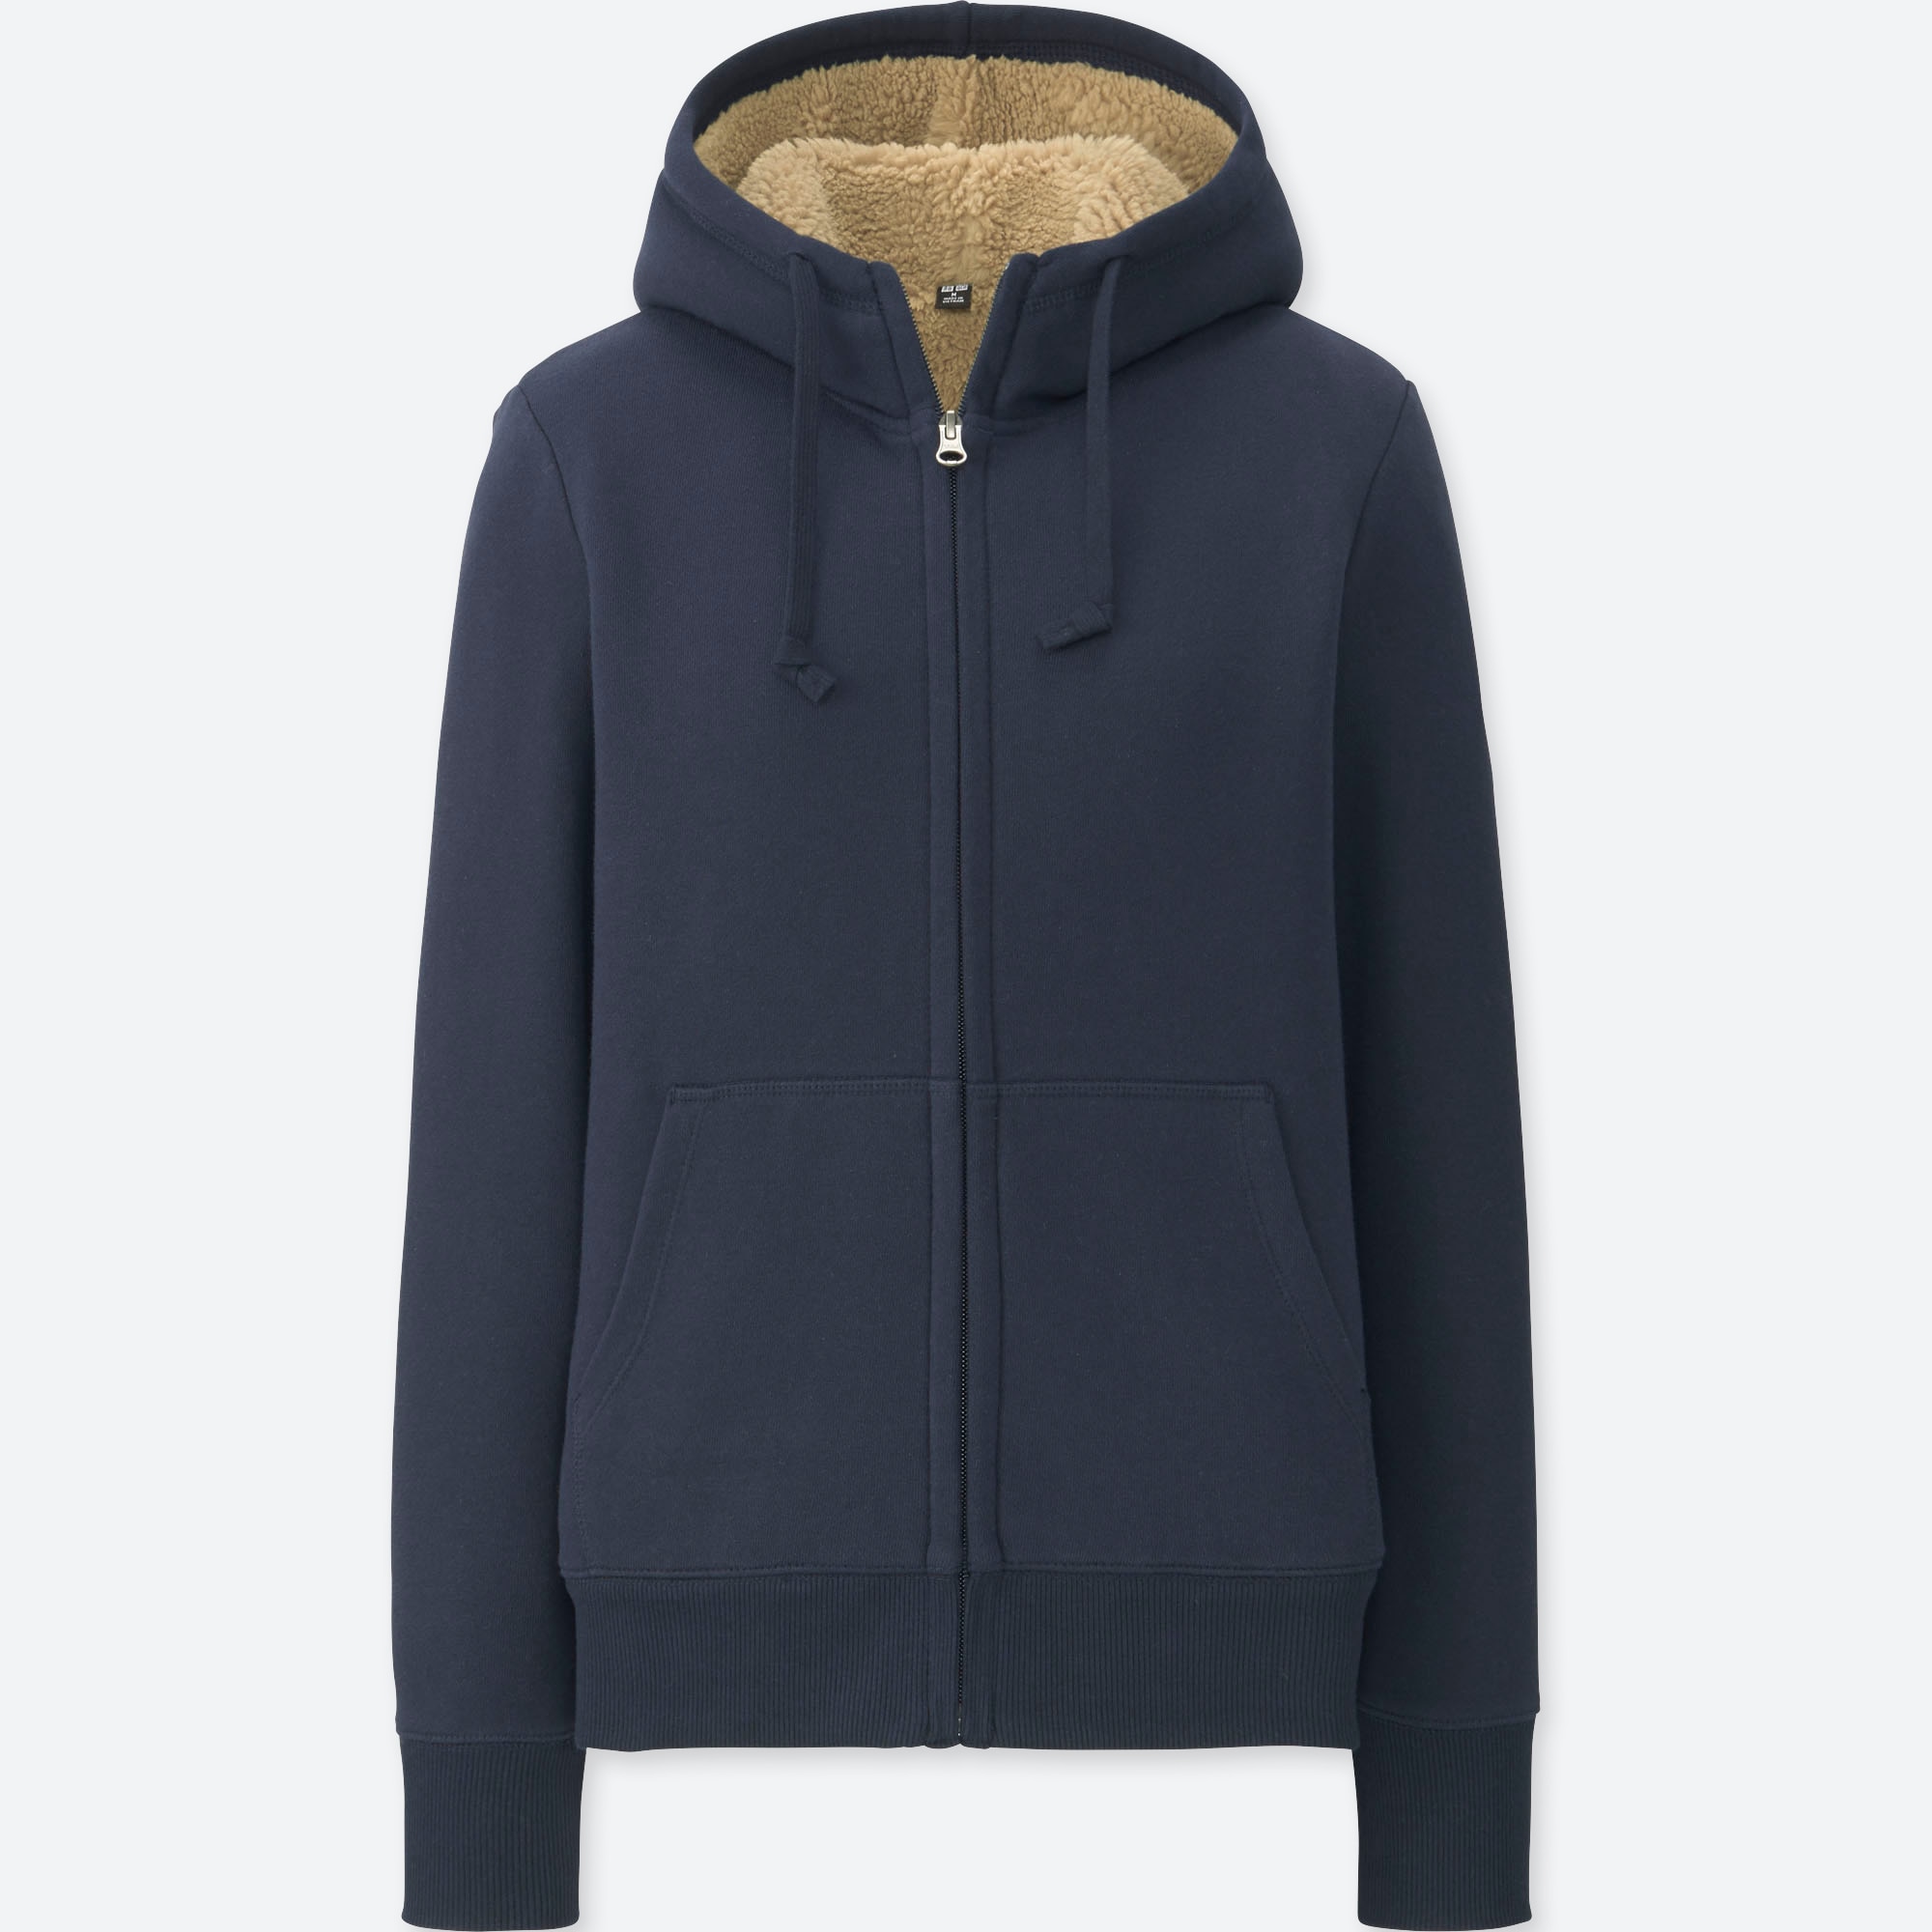 hoodie with fur inside